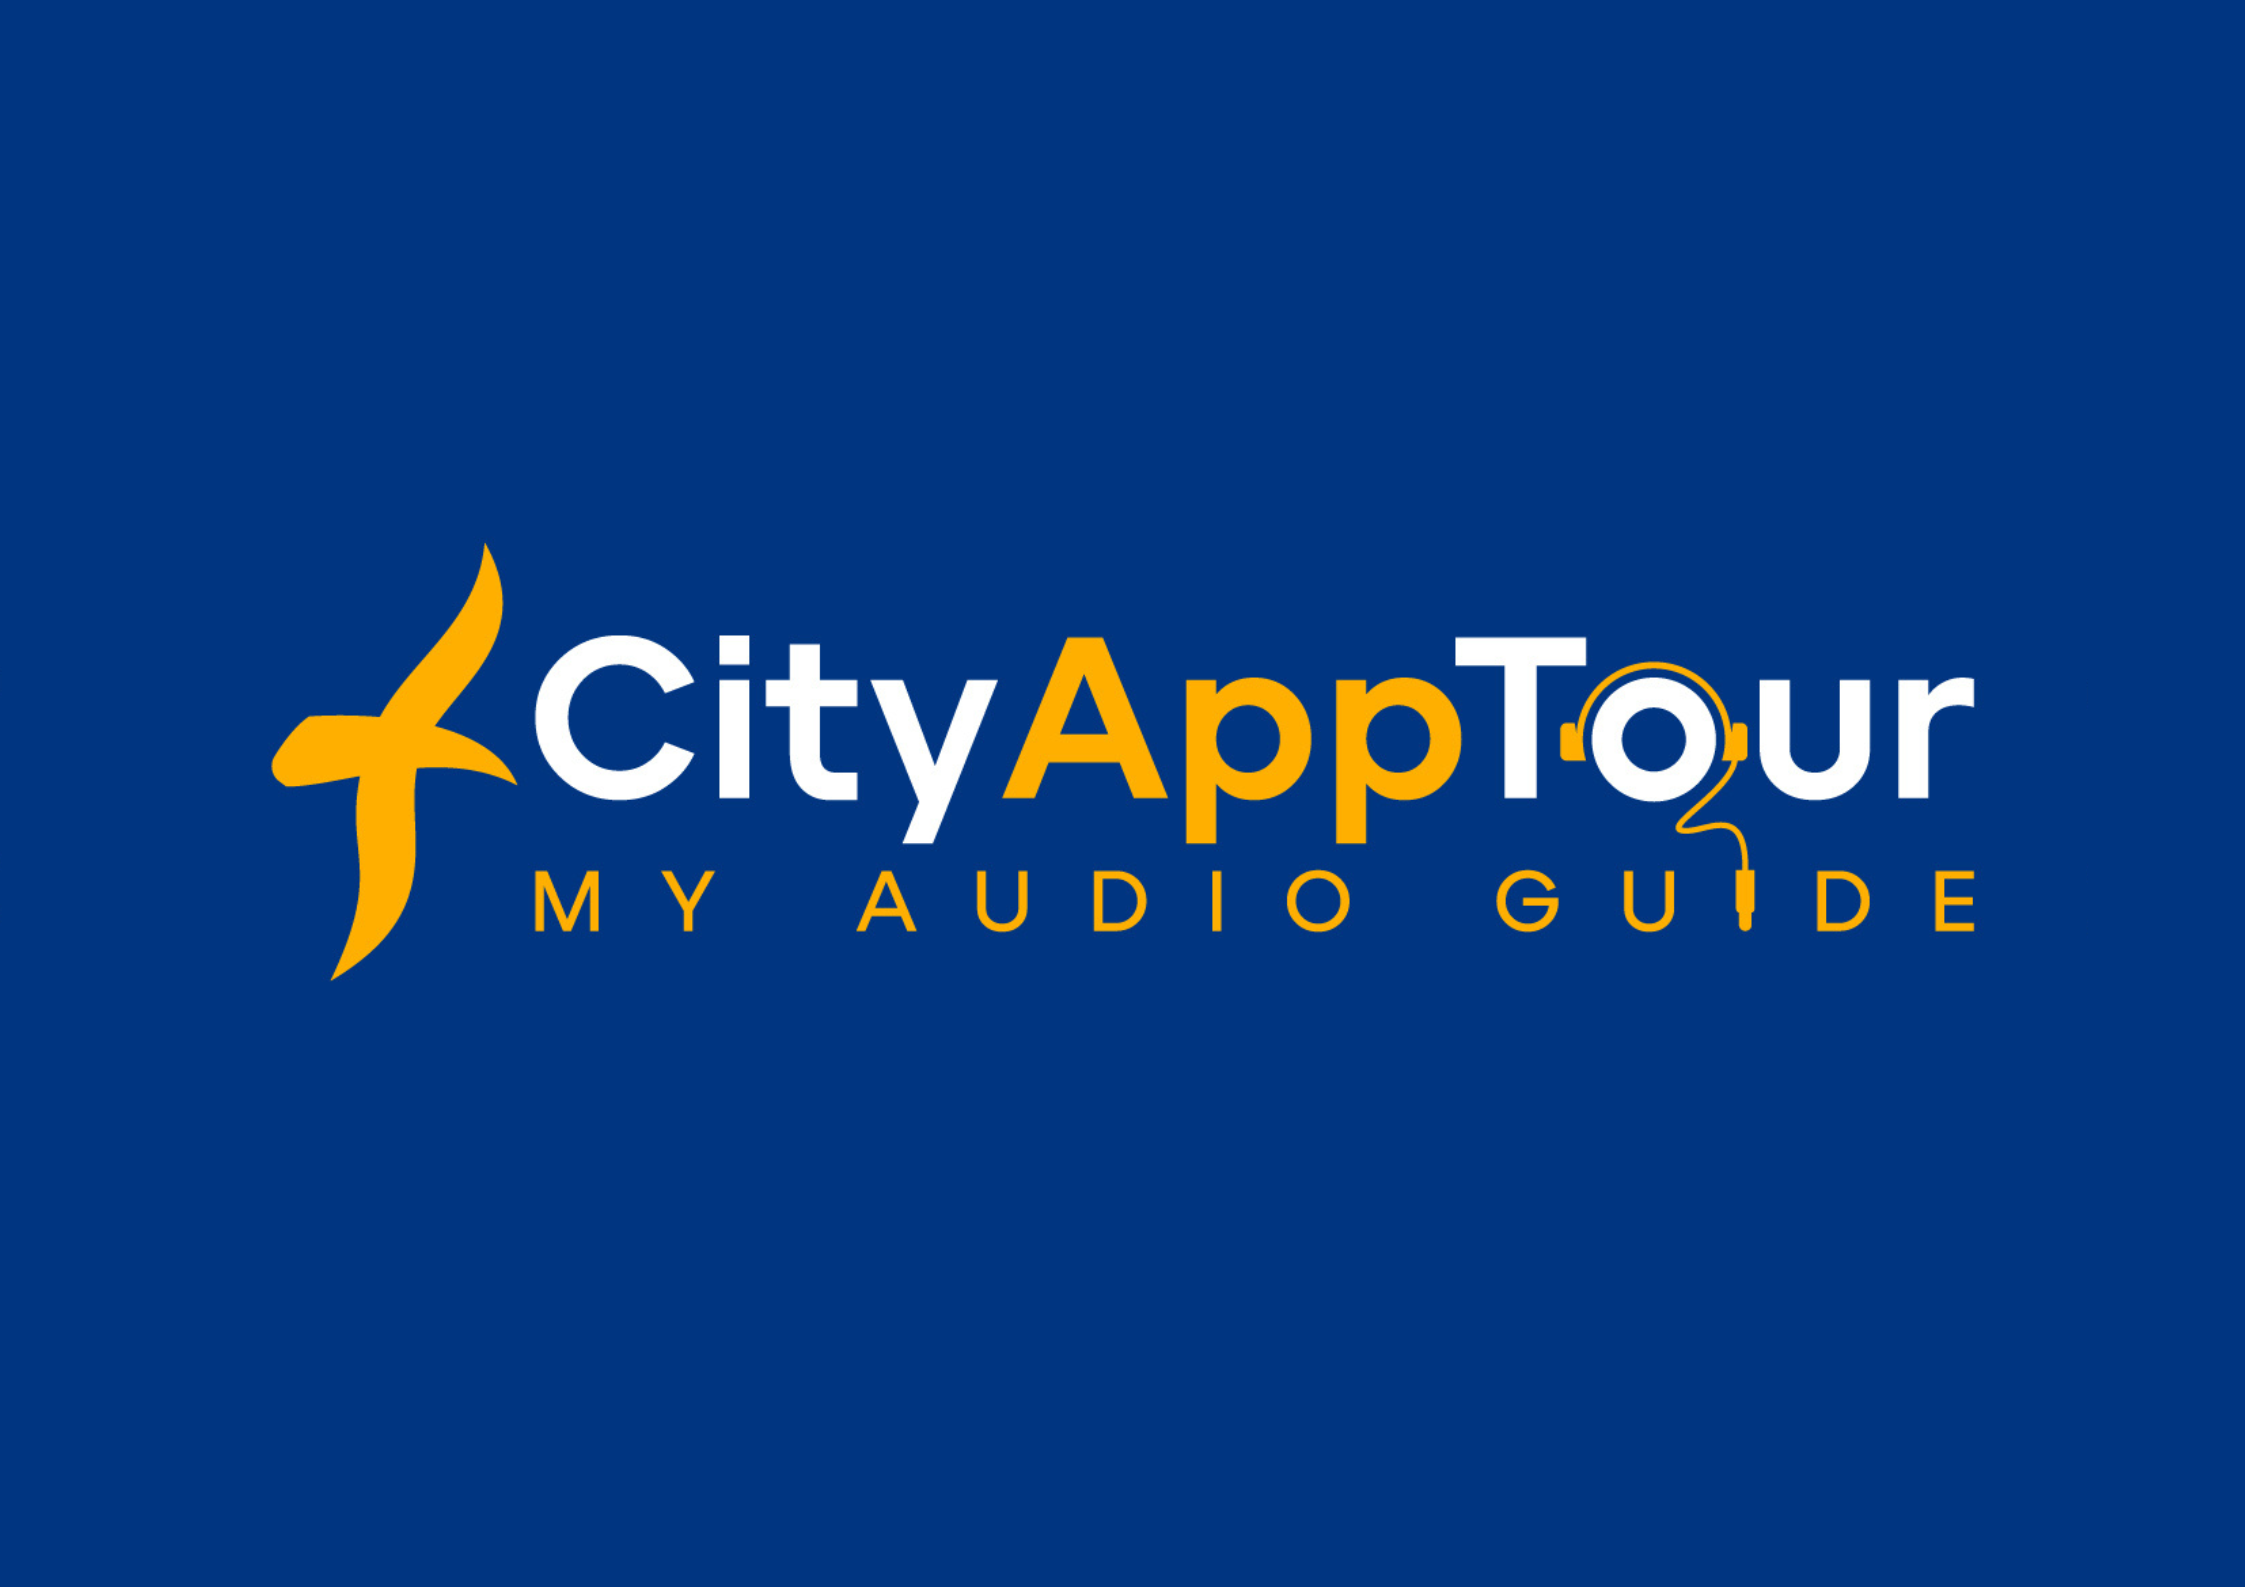 City App Tour